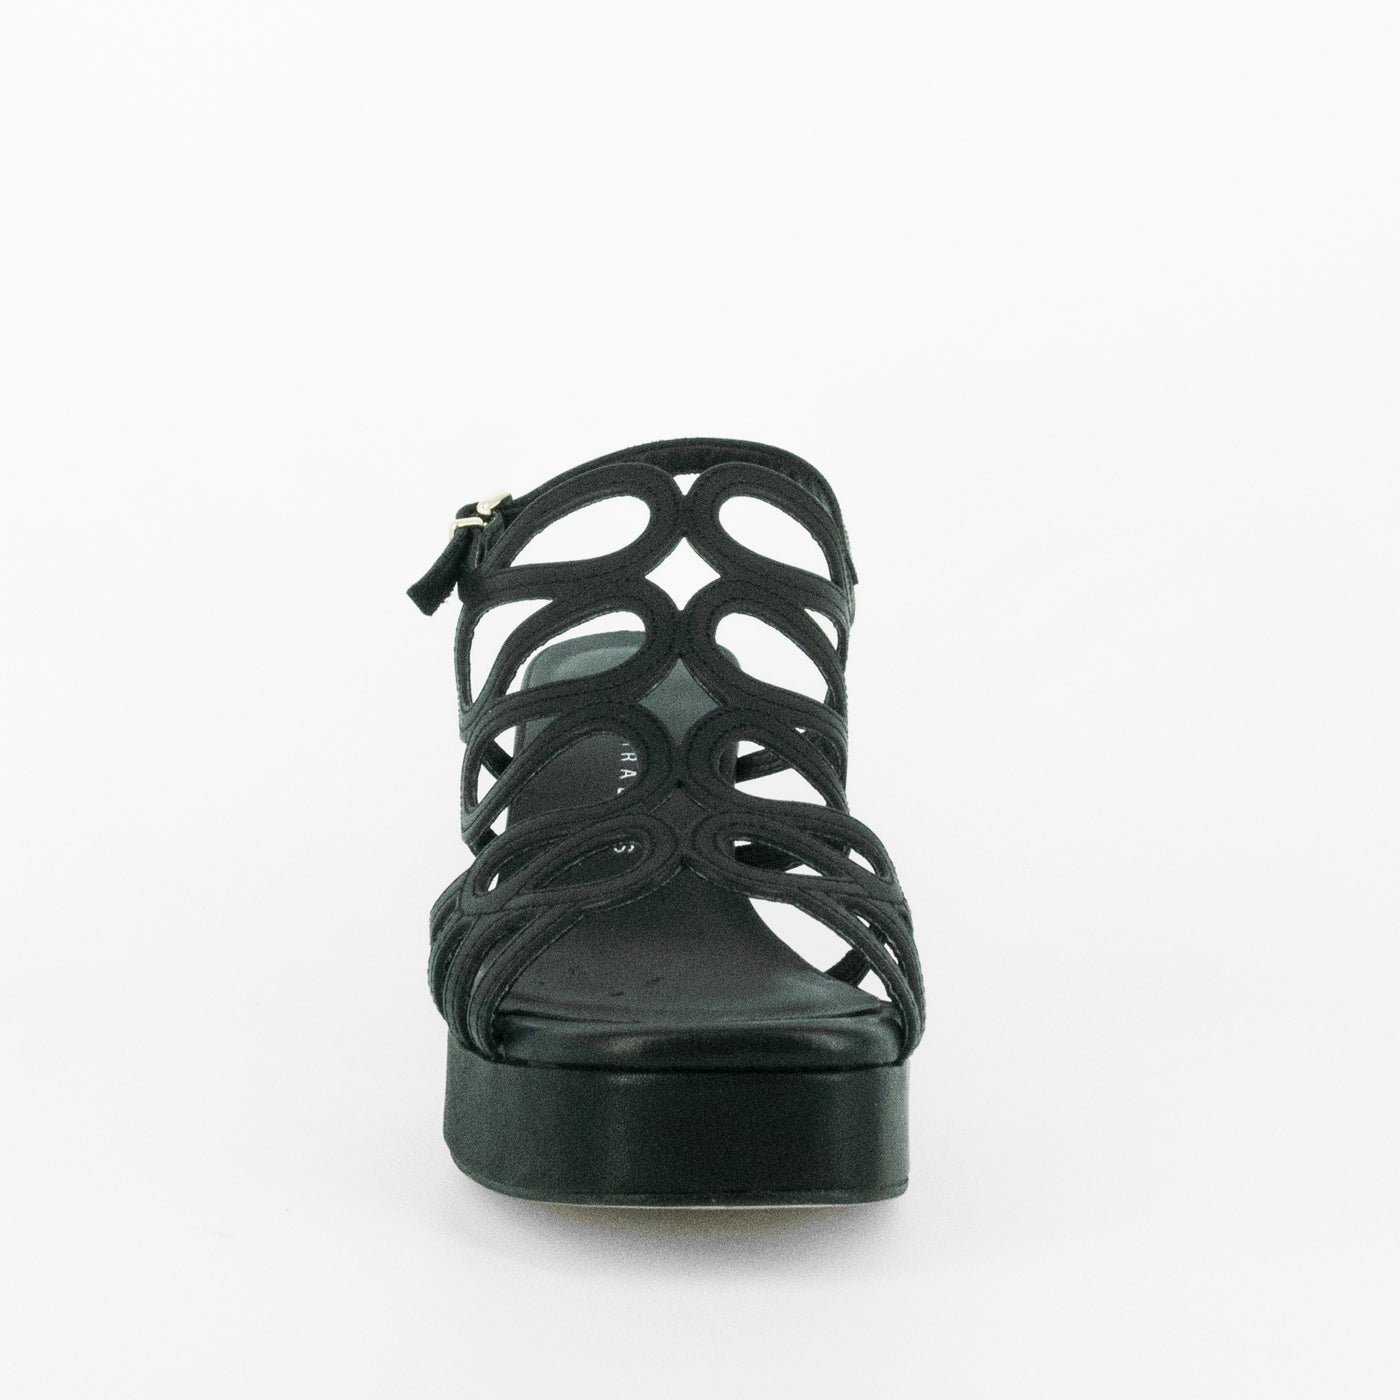 Sandalias De La Marca Pedro Miralles Para Mujer Modelo 13202 Alfa En Color Negro